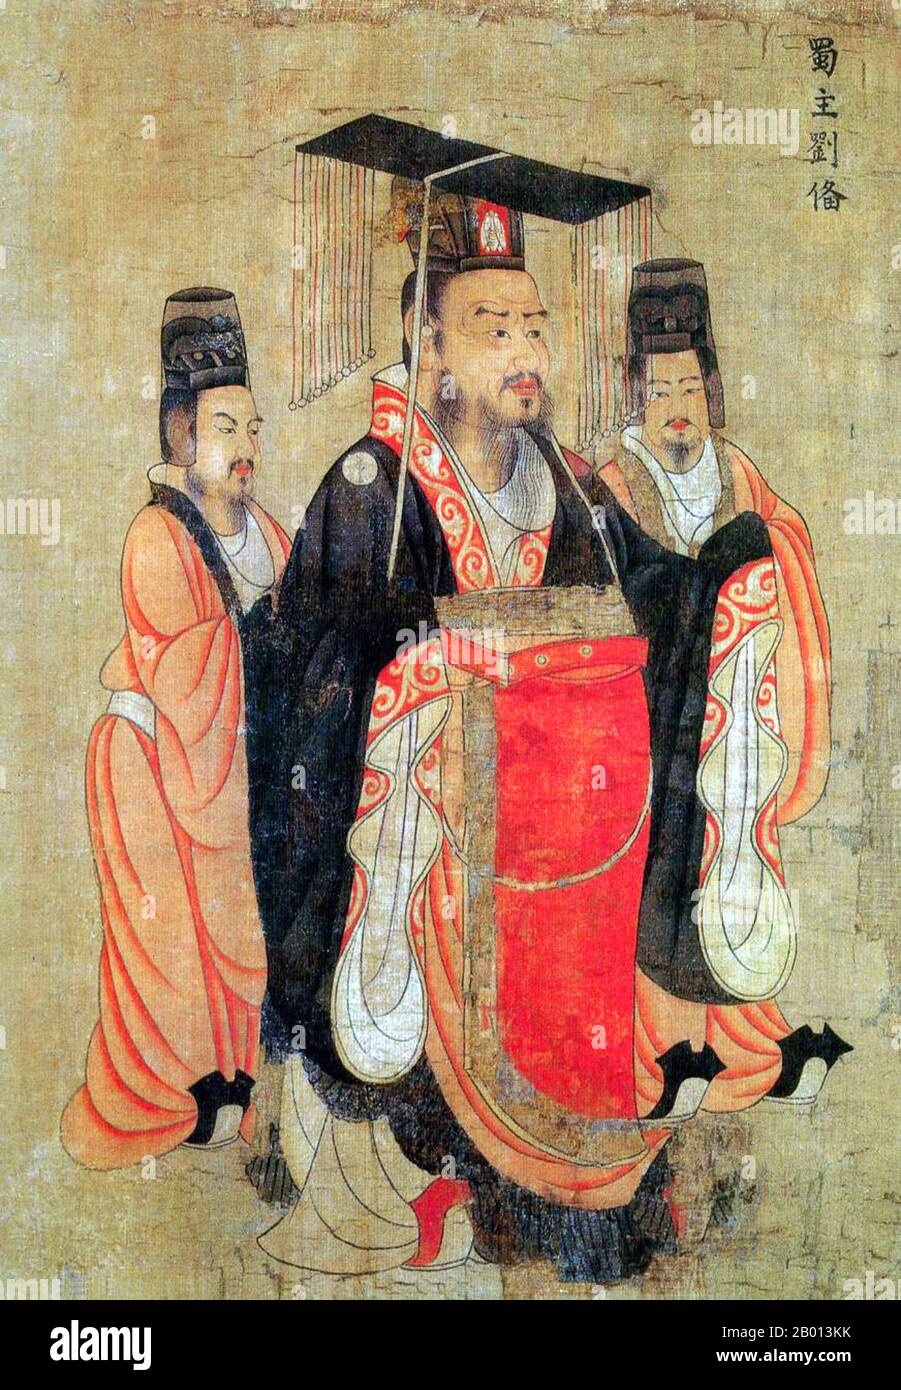 Chine : empereur Zhaolie de Shu Han (162 - 21 juin 223). Tableau de Handscroll du 'treize Emperors Scroll' par le peintre de cour de la dynastie Tang Yan Liben (600-673), VIIe siècle. Liu BEI était un seigneur de guerre, général militaire et, en tant que l'empereur Zhaolie, le fondateur de l'état de Shu Han pendant l'ère des trois royaumes de l'histoire chinoise. Bien qu'ayant pris un départ plus tard que ses rivaux et manquant à la fois des ressources matérielles et du statut social qu'ils avaient commandé, Liu a surmonté ses nombreuses défaites pour sculpter son propre Royaume, qui à son apogée couvrait les jours modernes Sichuan, Guizhou, Hunan, une partie de Hubei et une partie de Gansu. Banque D'Images